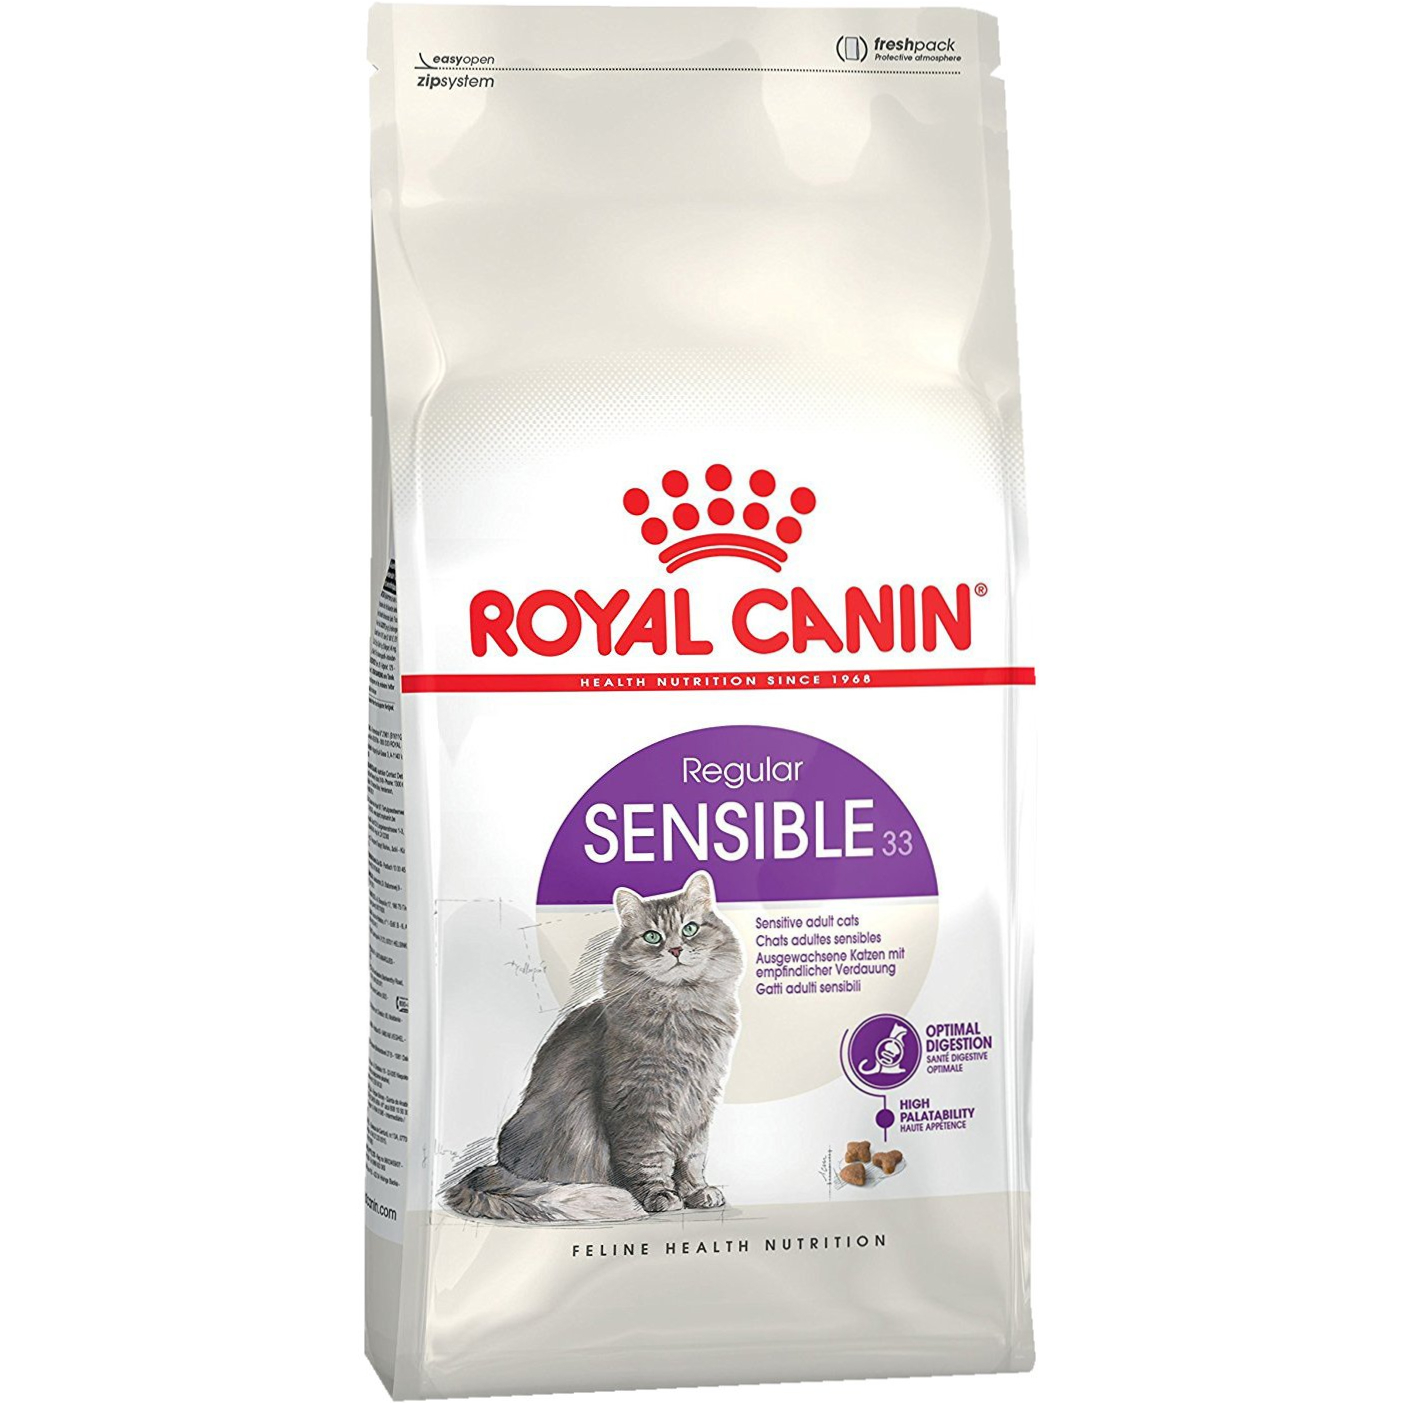 Корм для кошек Royal Canin Sensible 33 с чувствительным пищеварением 1,2 кг корм для кошек royal canin sensible 33 с чувствительным пищеварением 1 2 кг